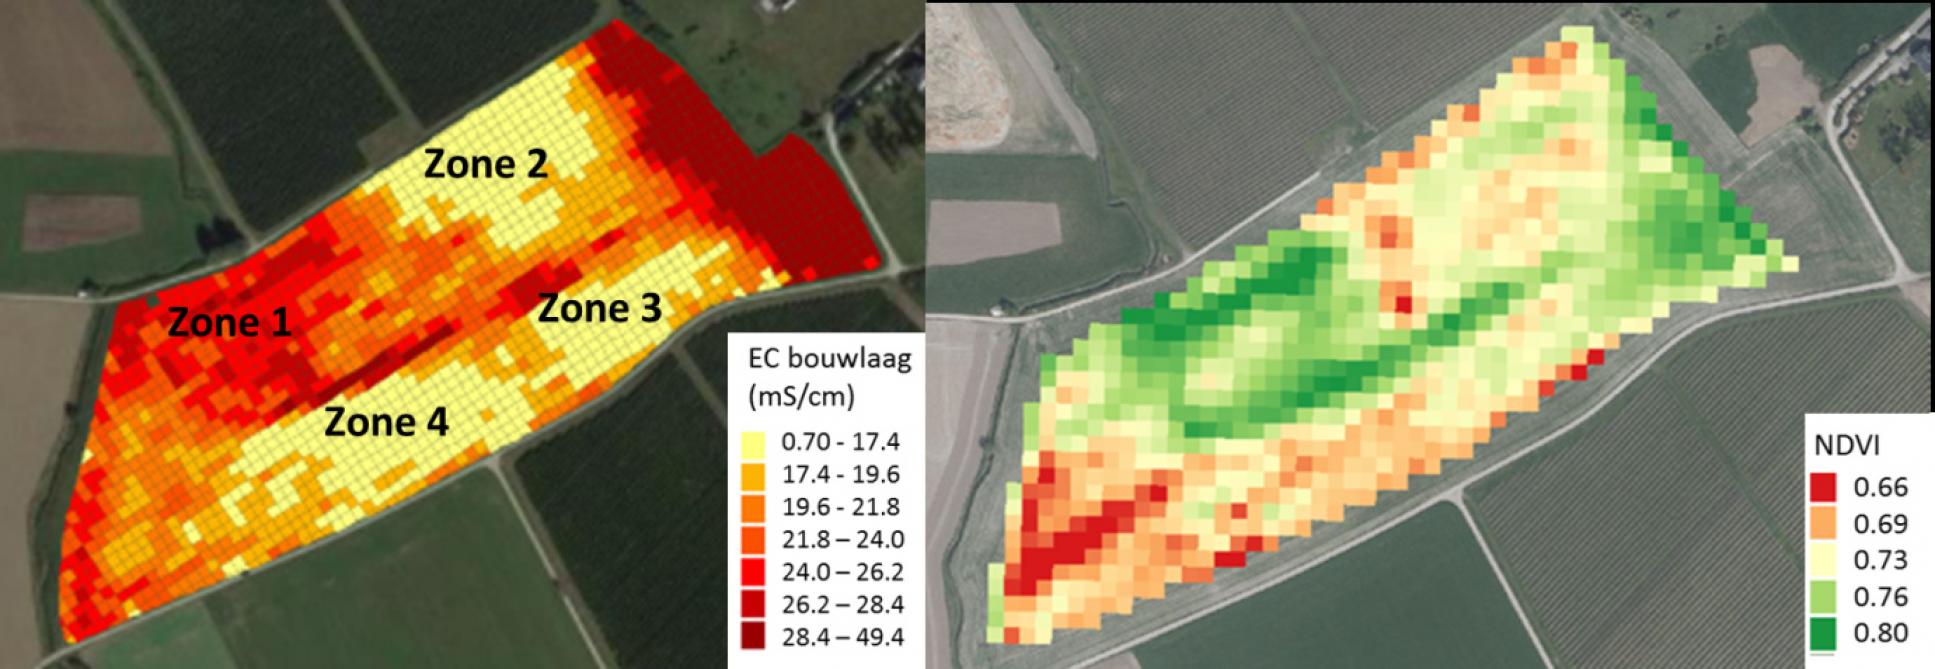 EC-waarde in de bouwlaag gemeten met de Veris bodemscanner en NDVI die de groenheid van het gewas weergeeft op 6/08/218. In de zone met een hoge EC (zone 1) bleef het loof langer groen terwijl dit in de andere zones sneller afstierf.